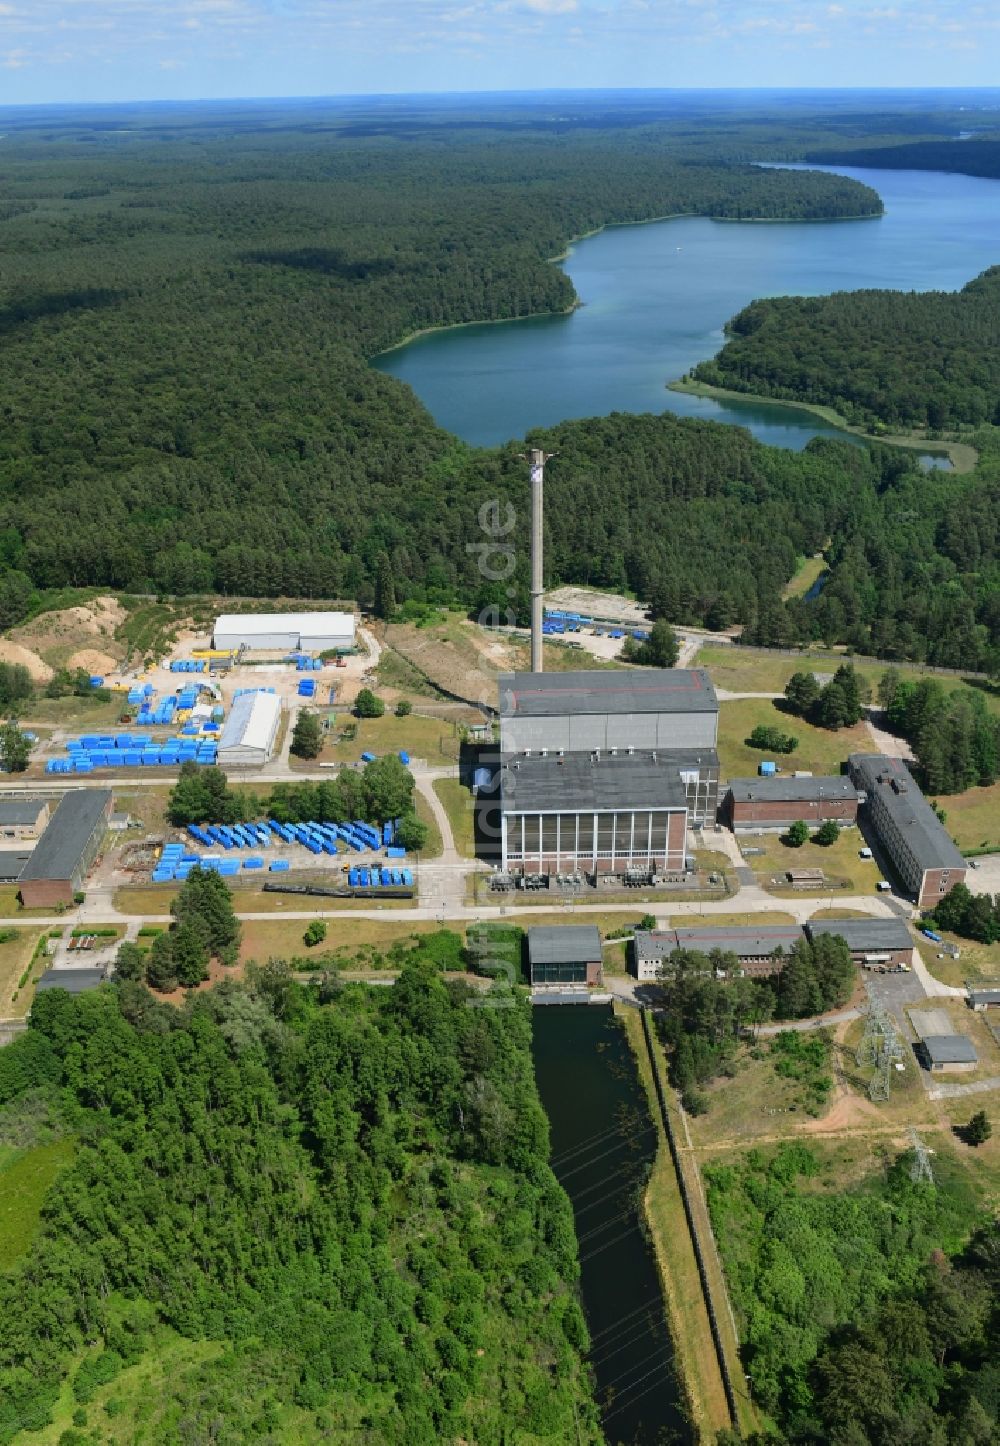 Luftbild Rheinsberg - Gebäude der stillgelegten Reaktorblöcke und Anlagen des AKW - KKW Kernkraftwerk in Rheinsberg im Bundesland Brandenburg, Deutschland